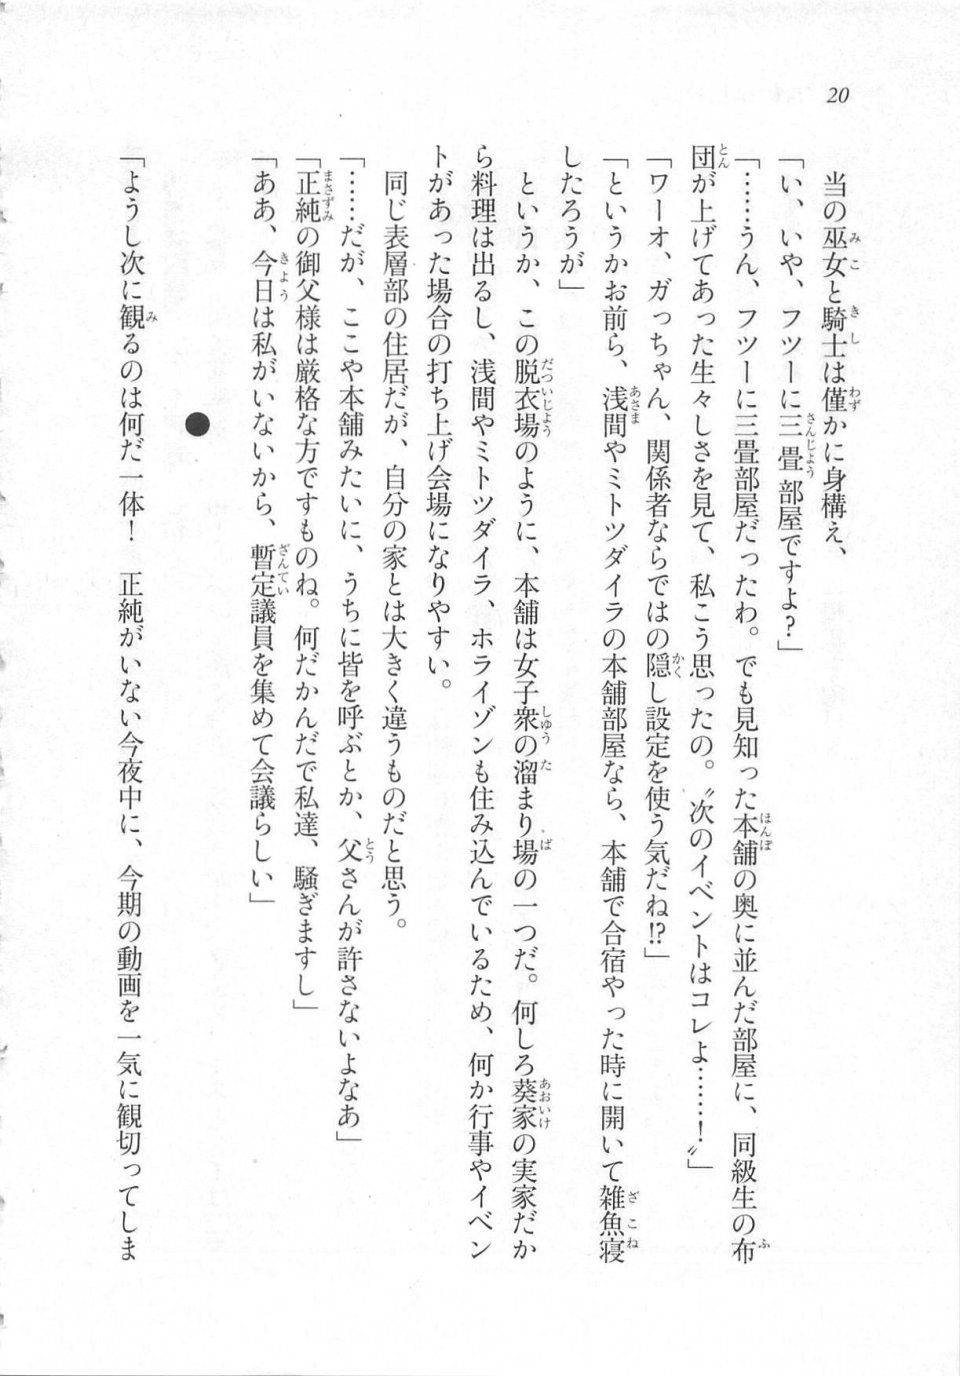 Kyoukai Senjou no Horizon LN Sidestory Vol 3 - Photo #24